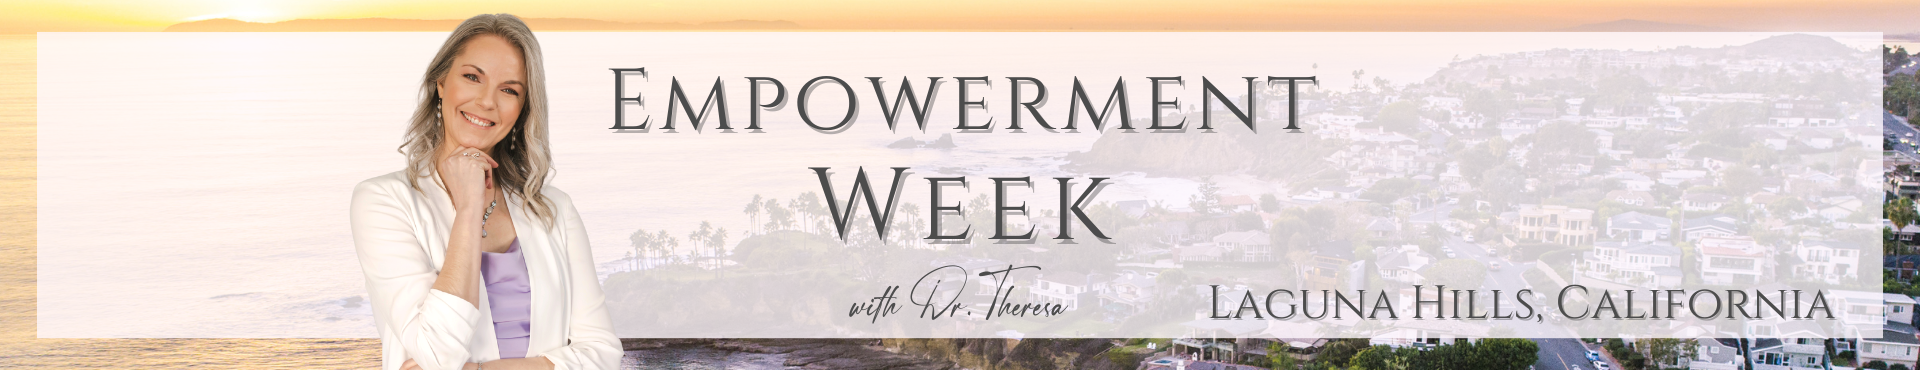 Empowerment Week US